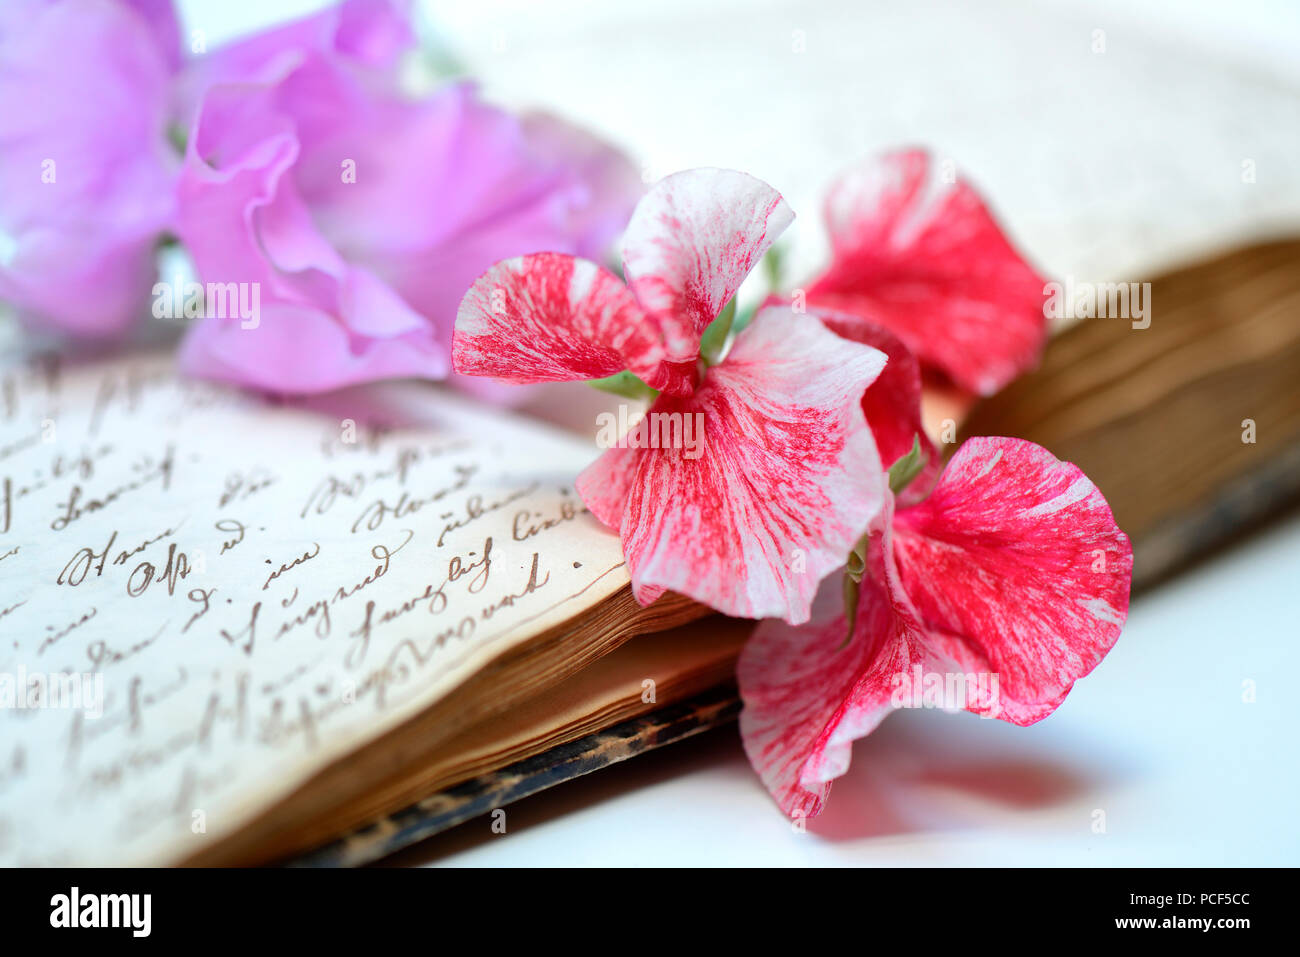 Duftwickenblueten auf Buch mit alter Handschrift, Lathyrus odoratus Stock Photo